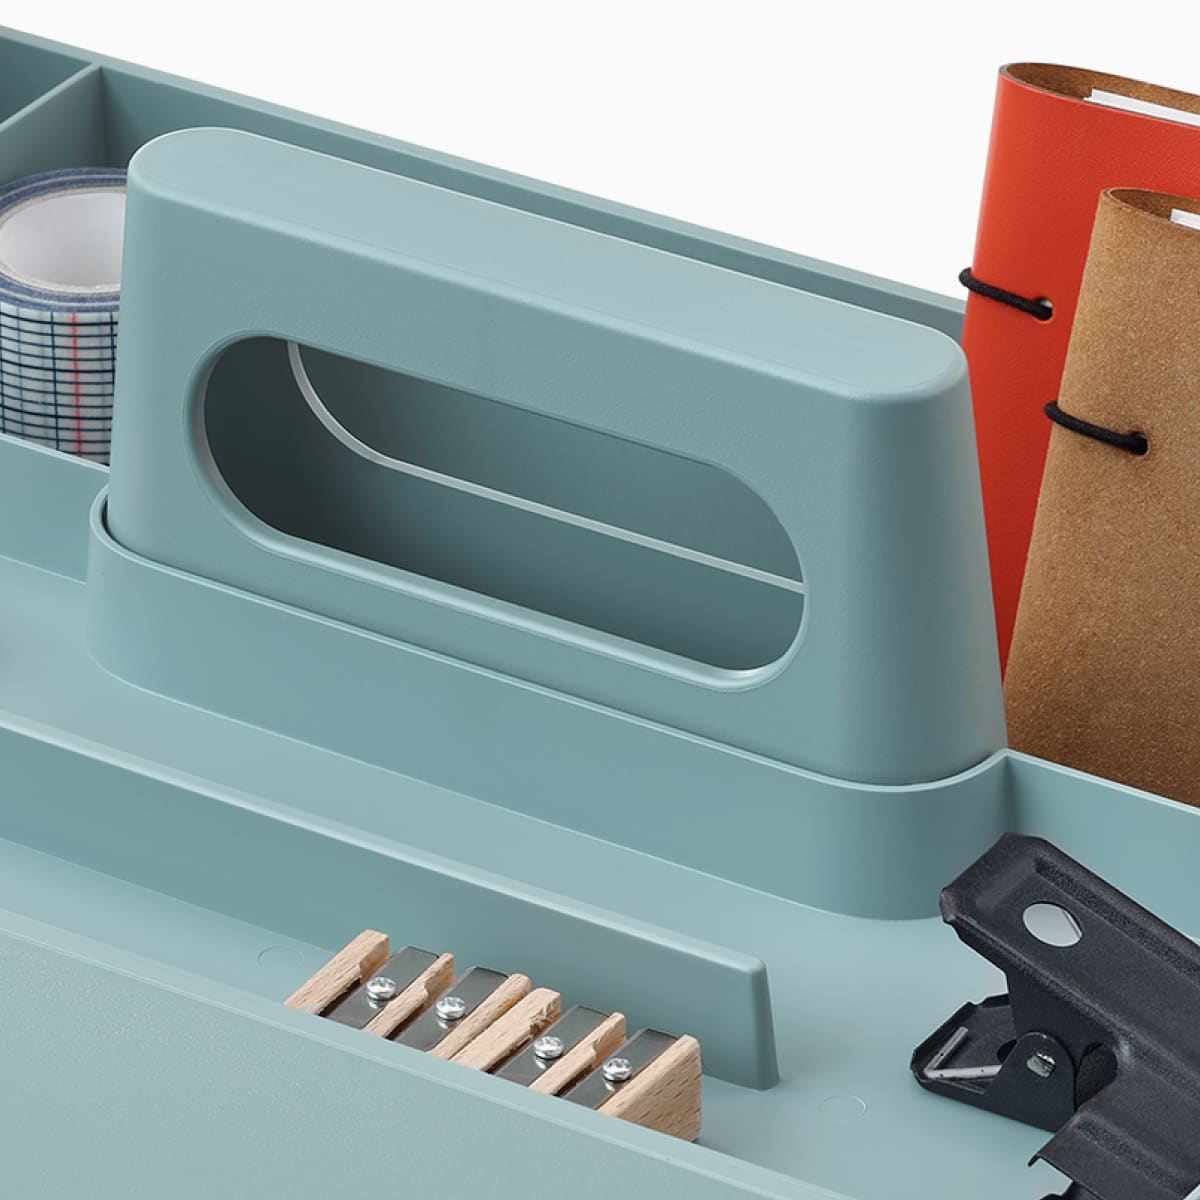 OE1 Workbox azzurra con matite, blocchi per appunti e altri oggetti personali, visti da un'angolazione.